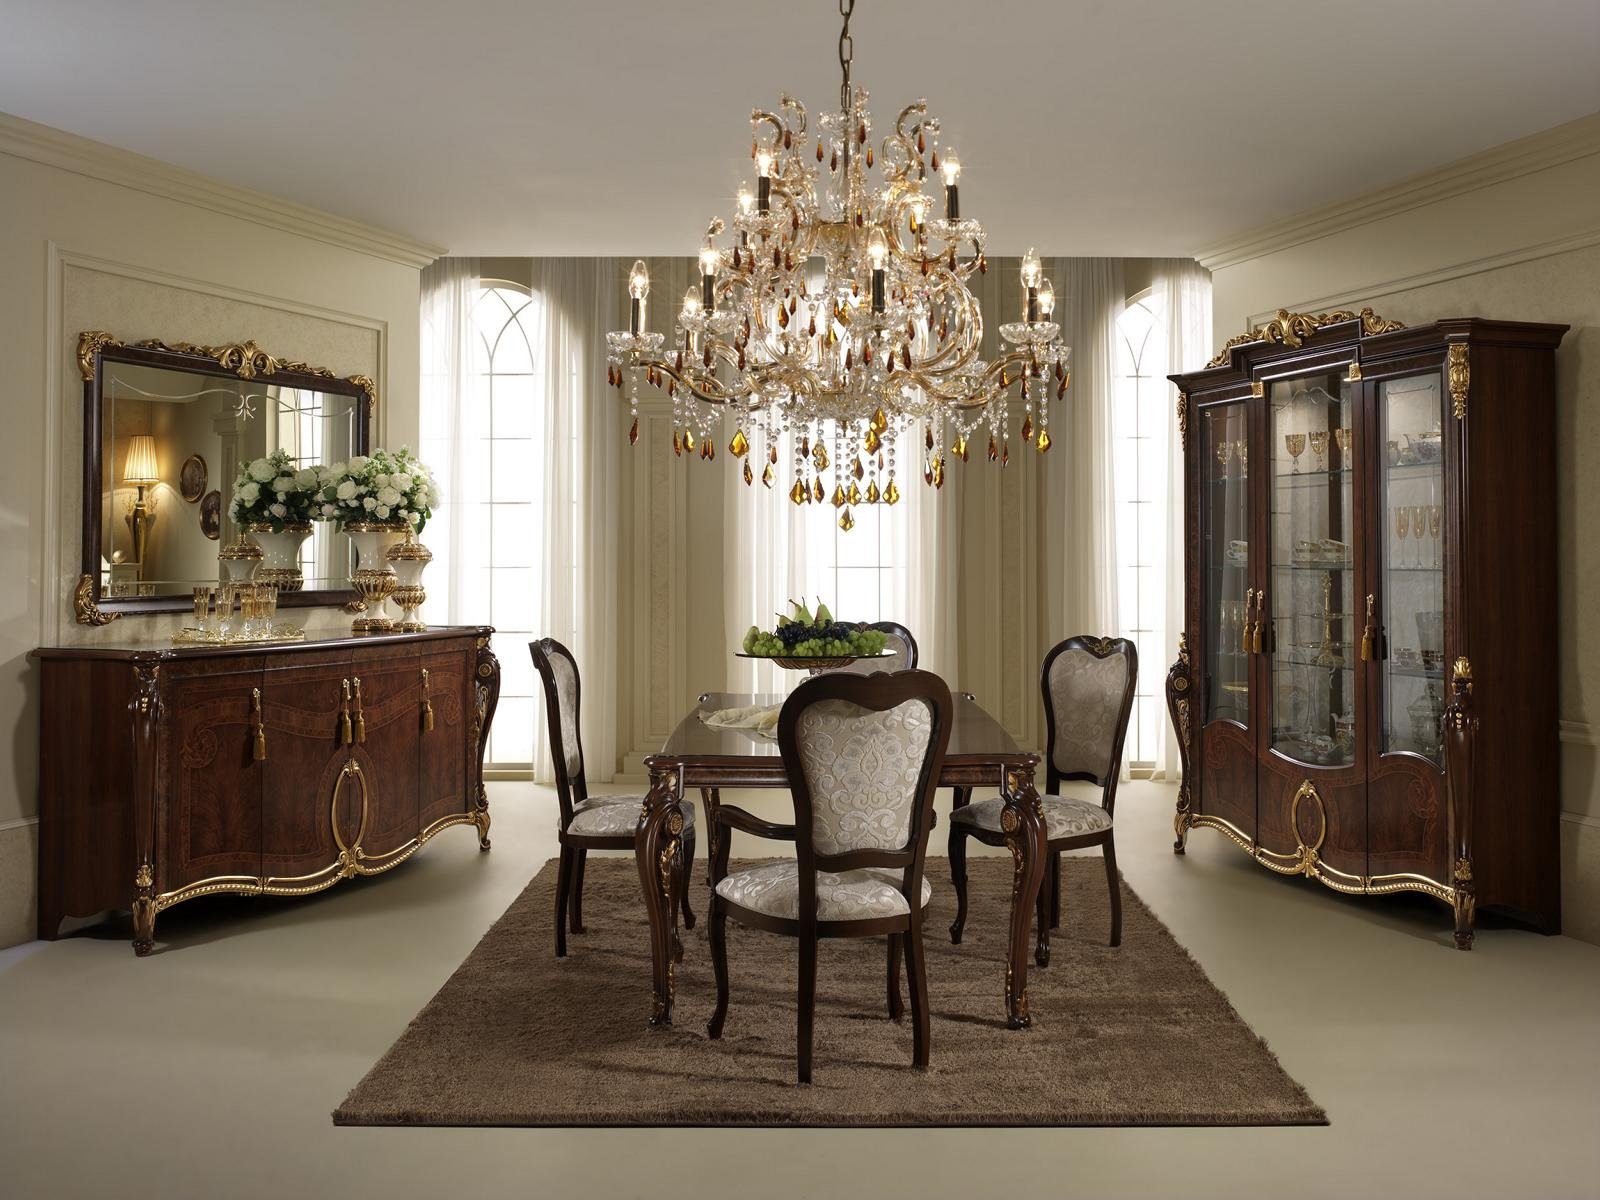 JVmoebel Essgruppe, arredoclassic™ Luxus Klassisches Esszimmer + 4 Stühle Stuhl Set Garnitur Design